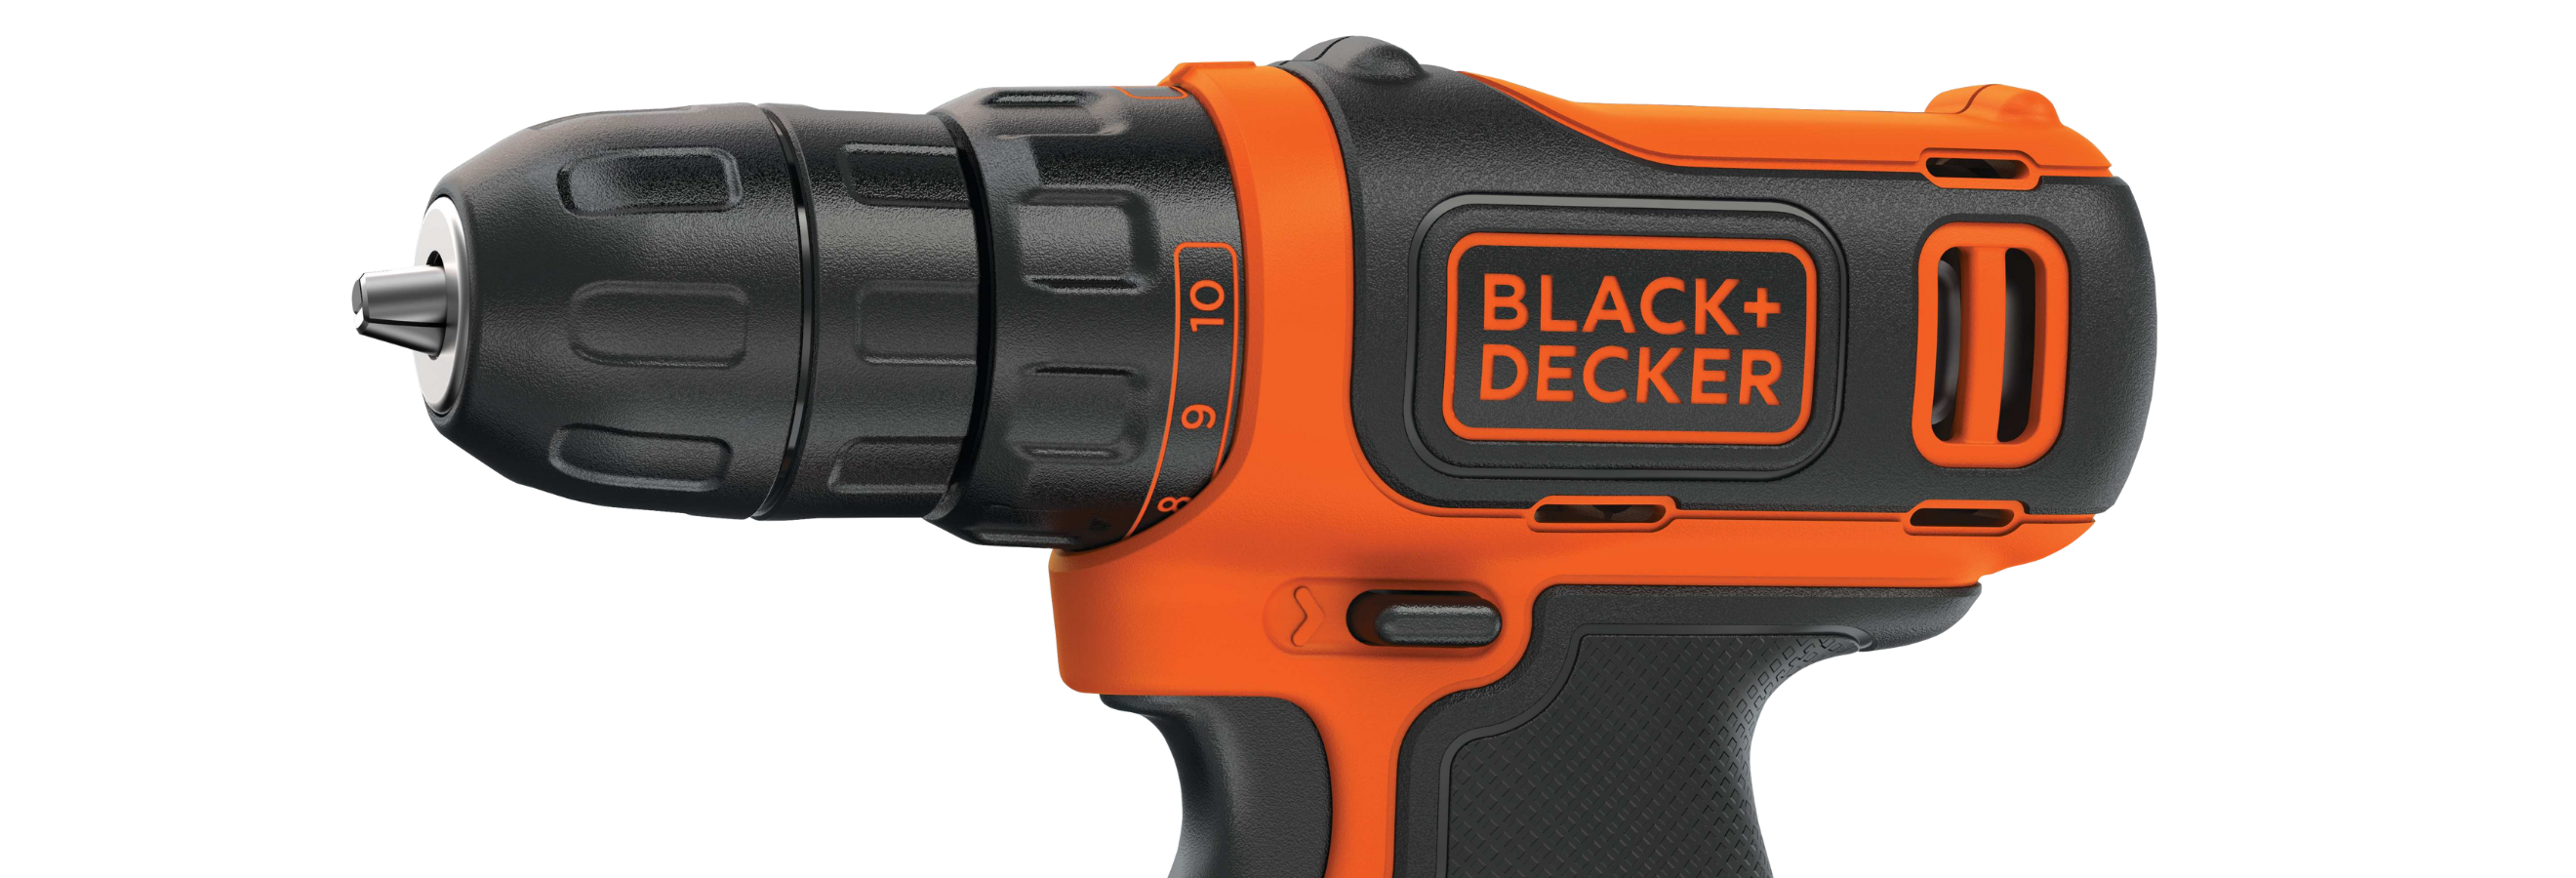 Black+Decker 12V Max Drill/Driver BDCDD12C Review